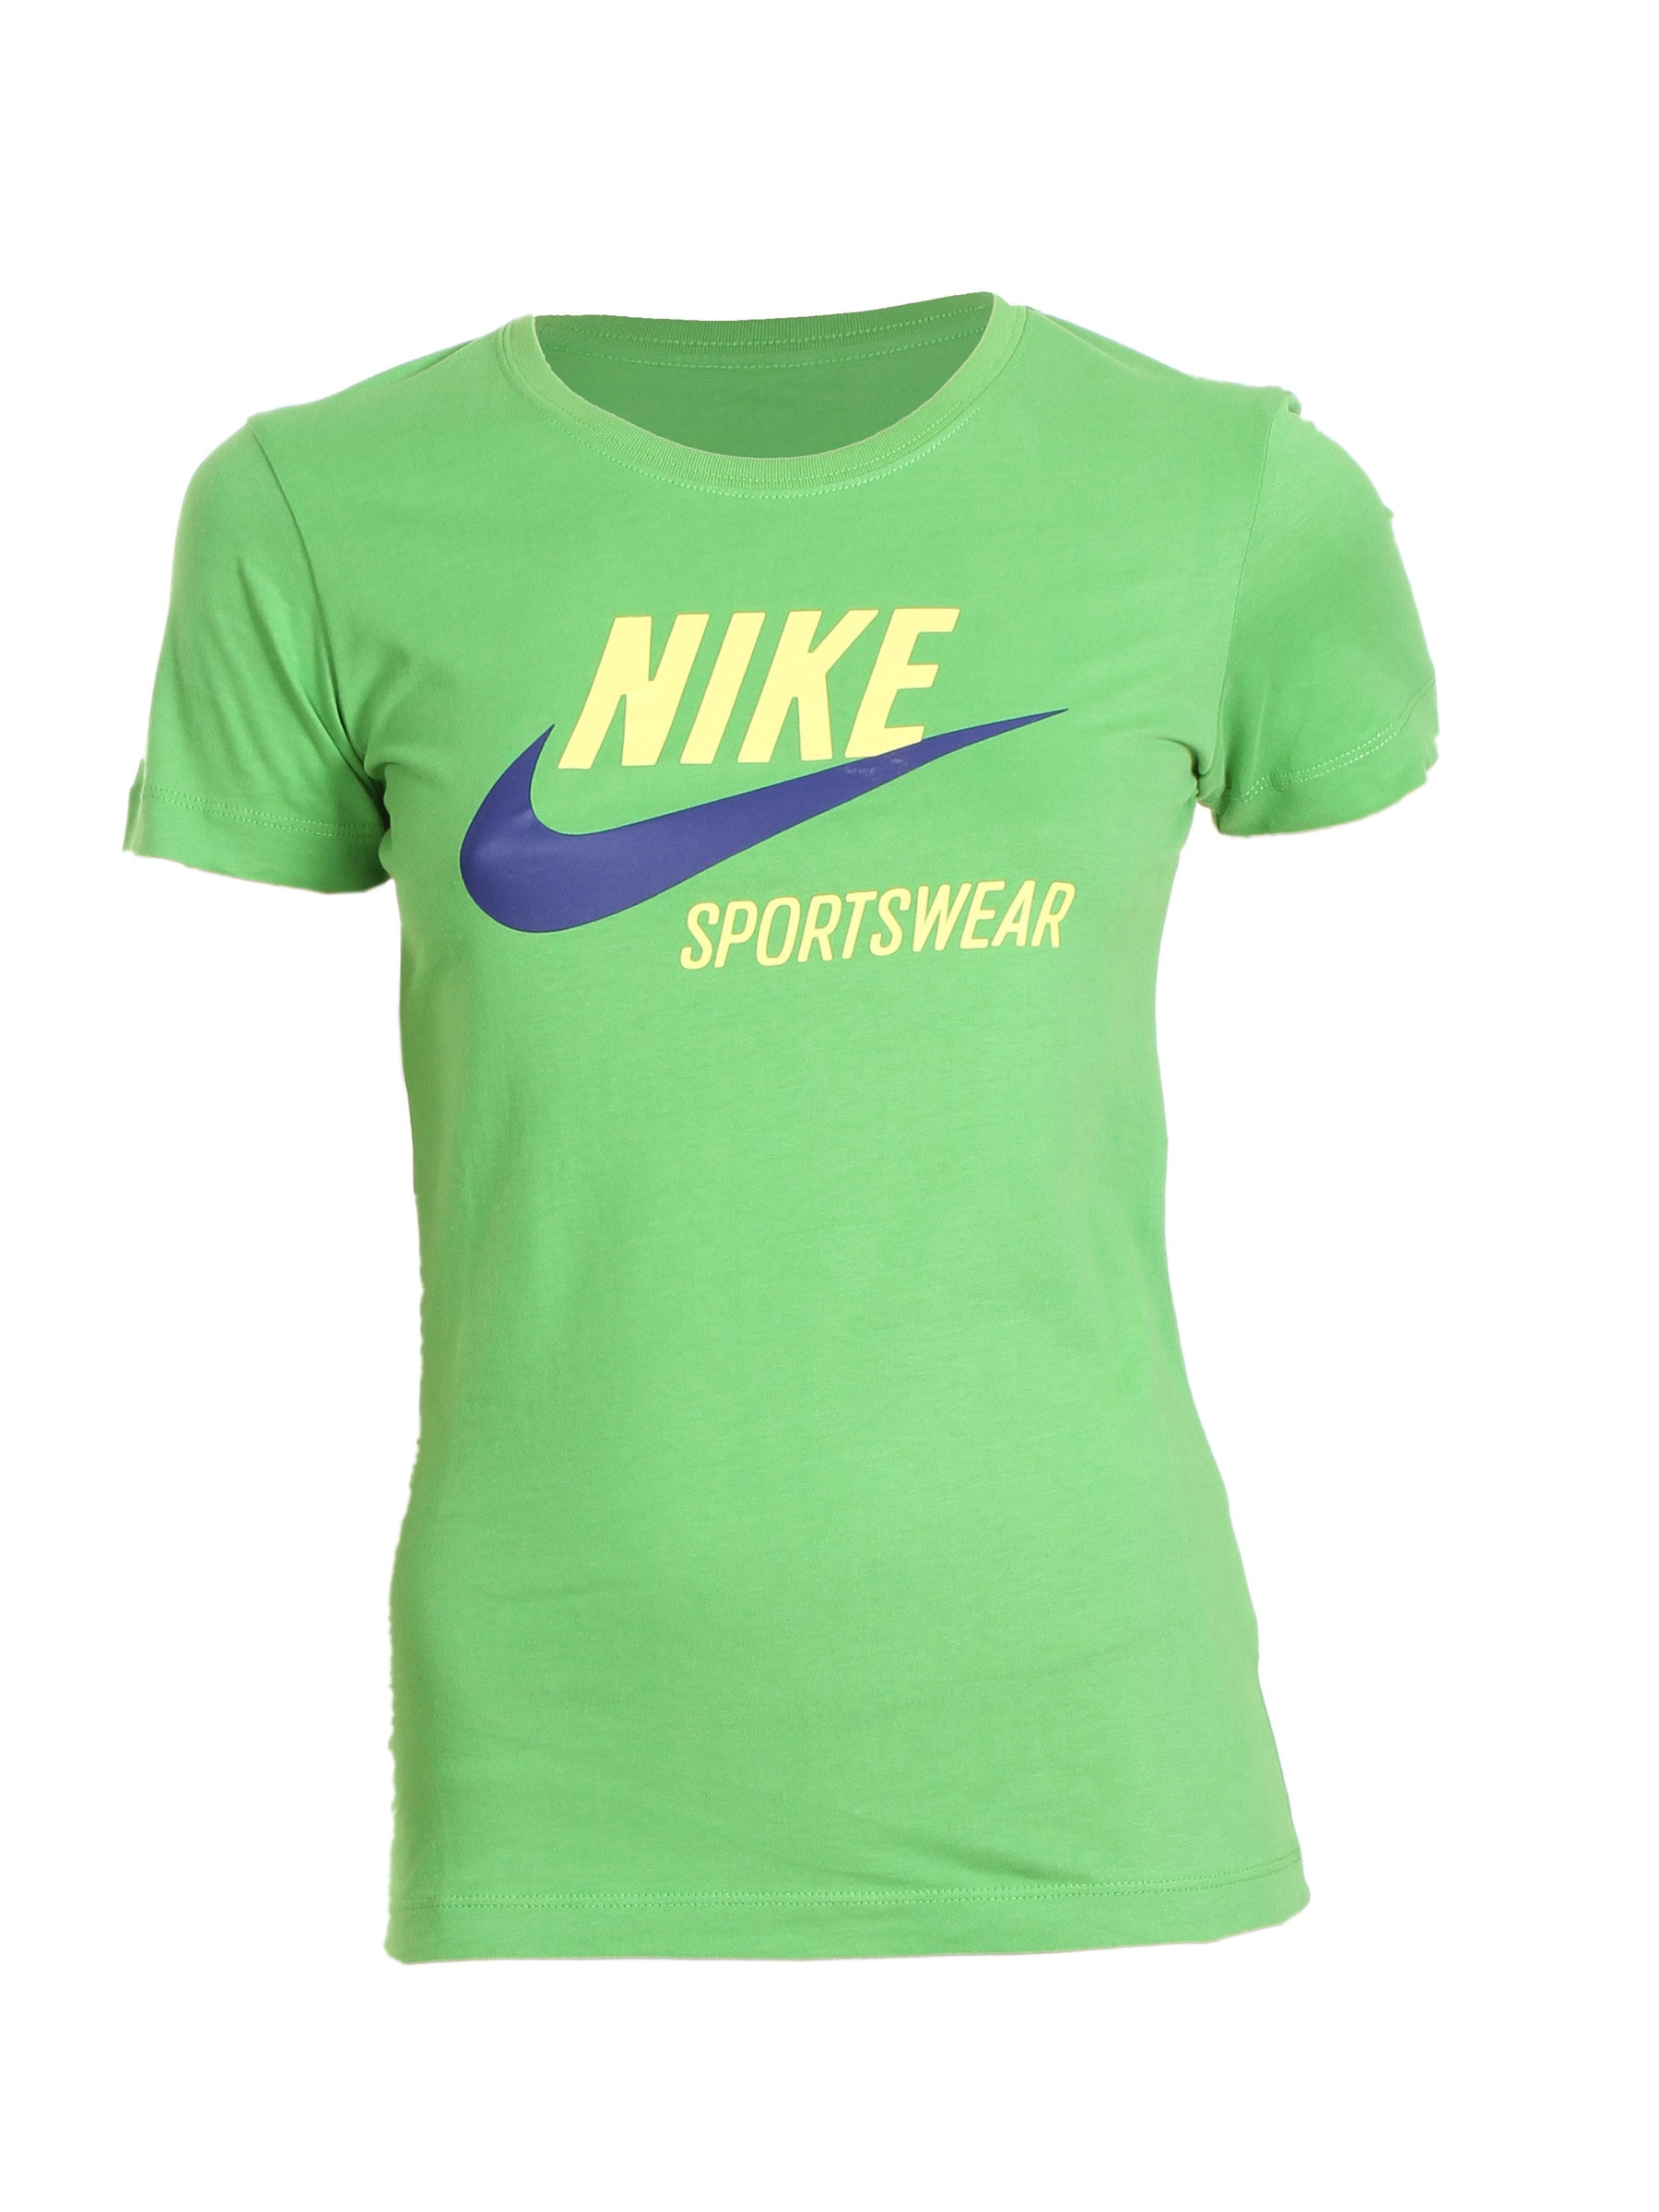 Nike Green Women T-shirt